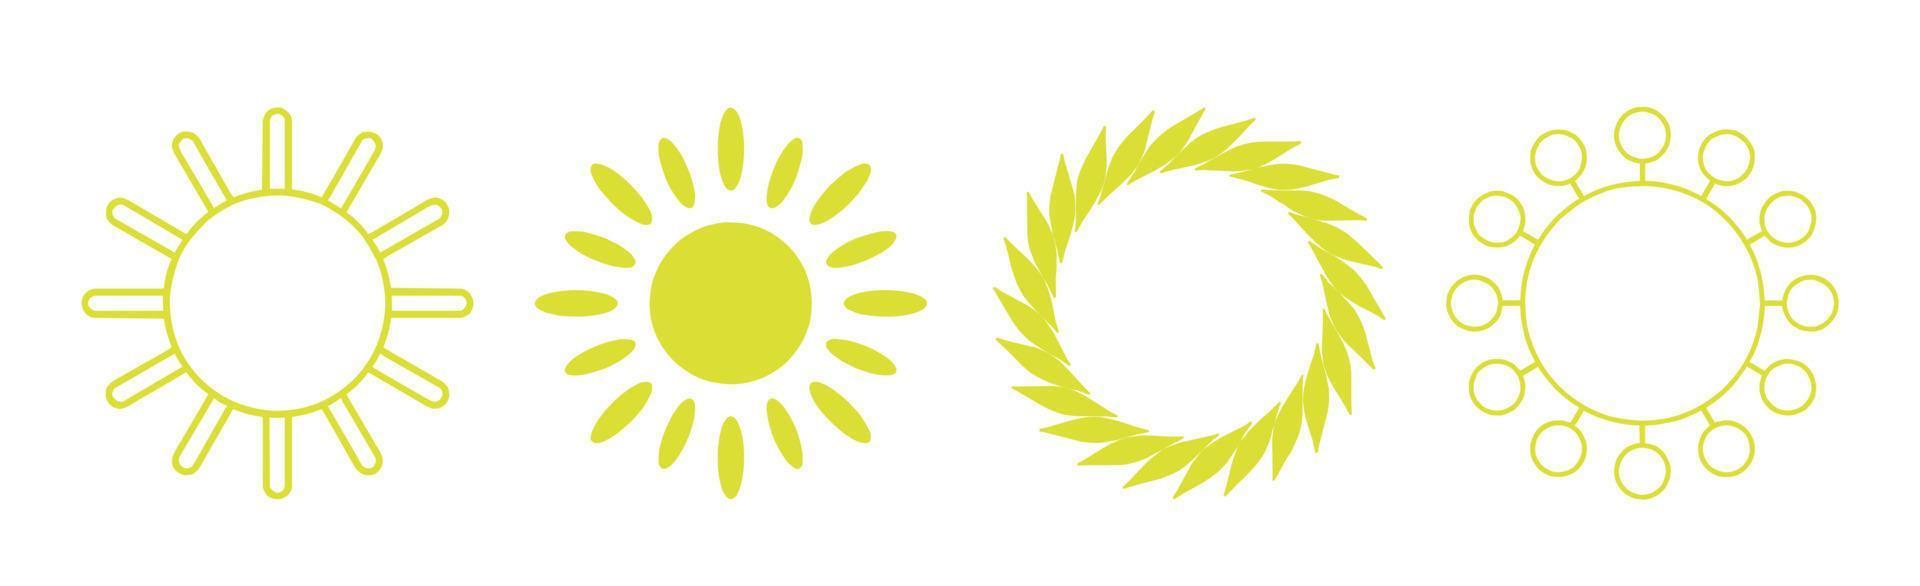 colección de 4 piezas de sol amarillo diferente abstracto sobre fondo blanco - vector